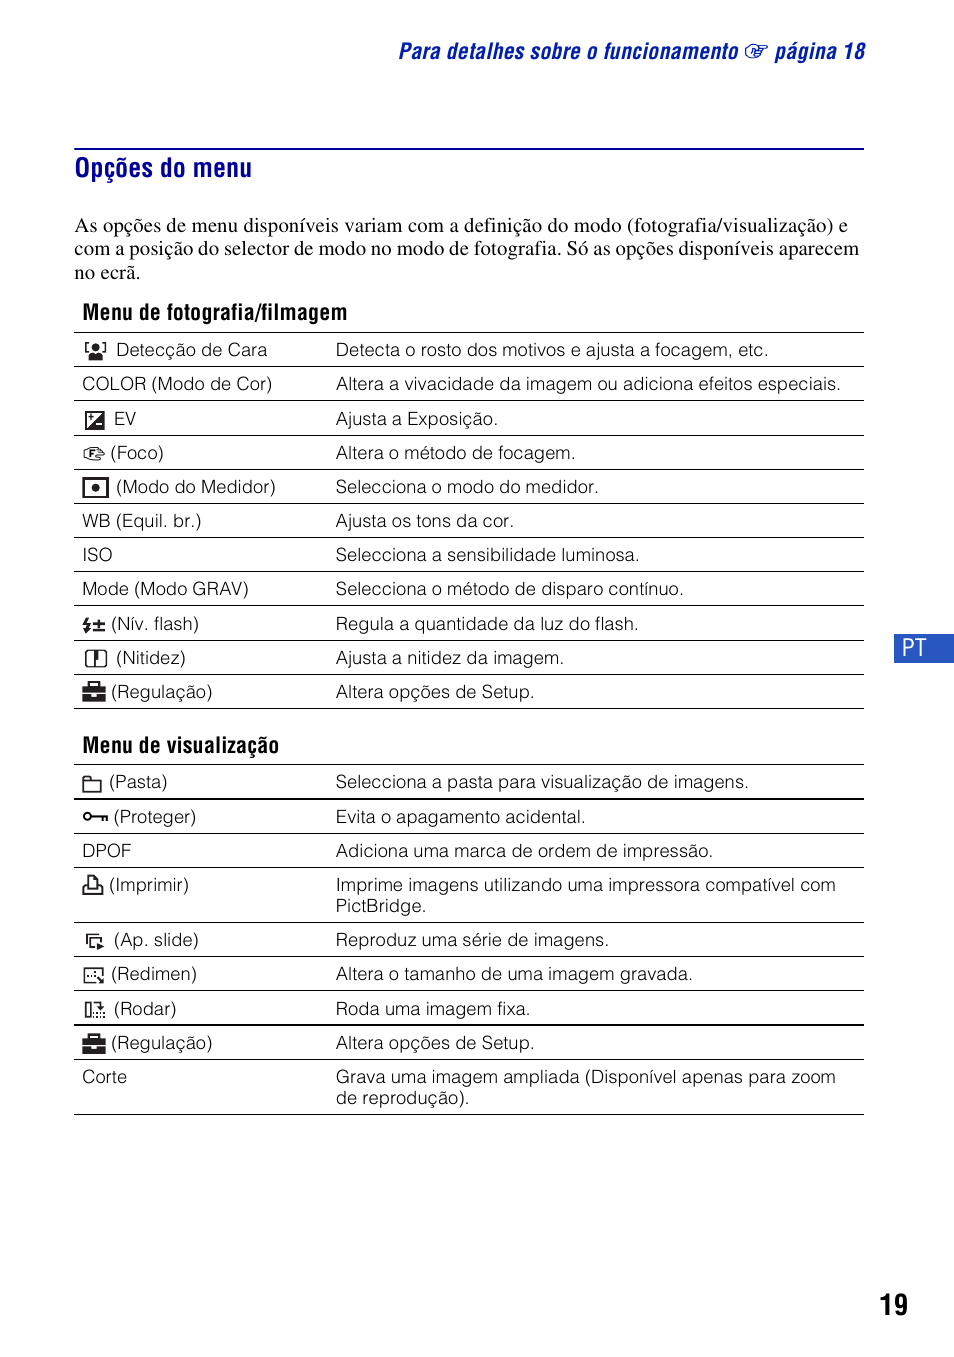 Opções do menu | Sony DSC-S780 Manual del usuario | Página 49 / 64